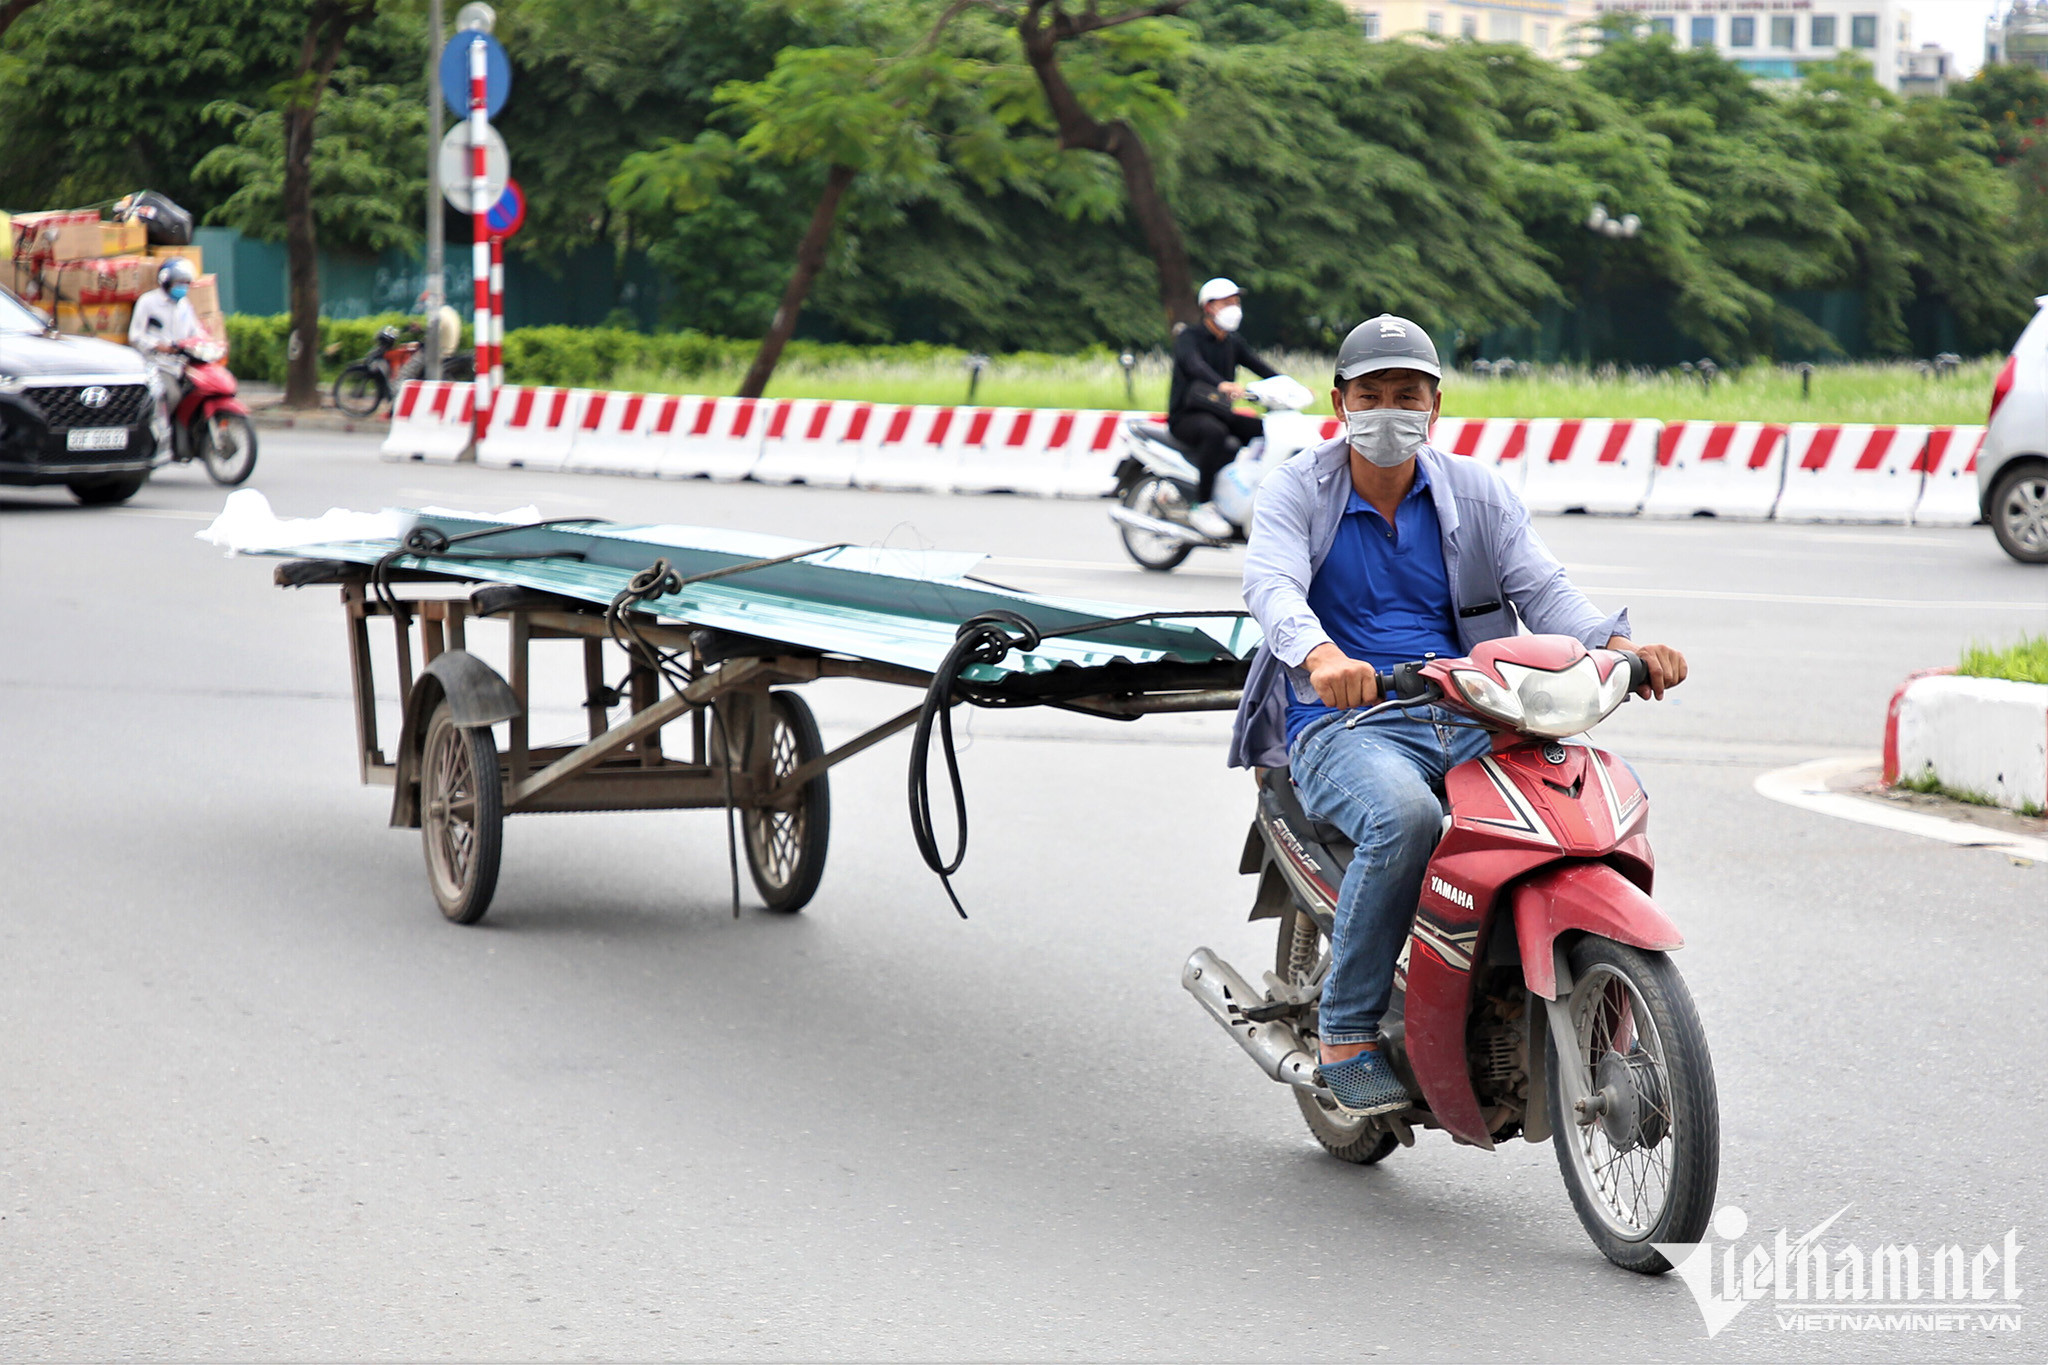 Xe máy cà tàng: Xe máy cà tàng là biểu tượng của phong cách sống tự do, khám phá và phiêu lưu. Hình ảnh về xe máy cà tàng sẽ đưa bạn đến những cung đường đẹp nhất Việt Nam và trải nghiệm những giây phút tuyệt vời cùng các bạn bè. Hãy cùng xem hình ảnh về xe máy cà tàng và bắt đầu chuyến hành trình mới của bạn!